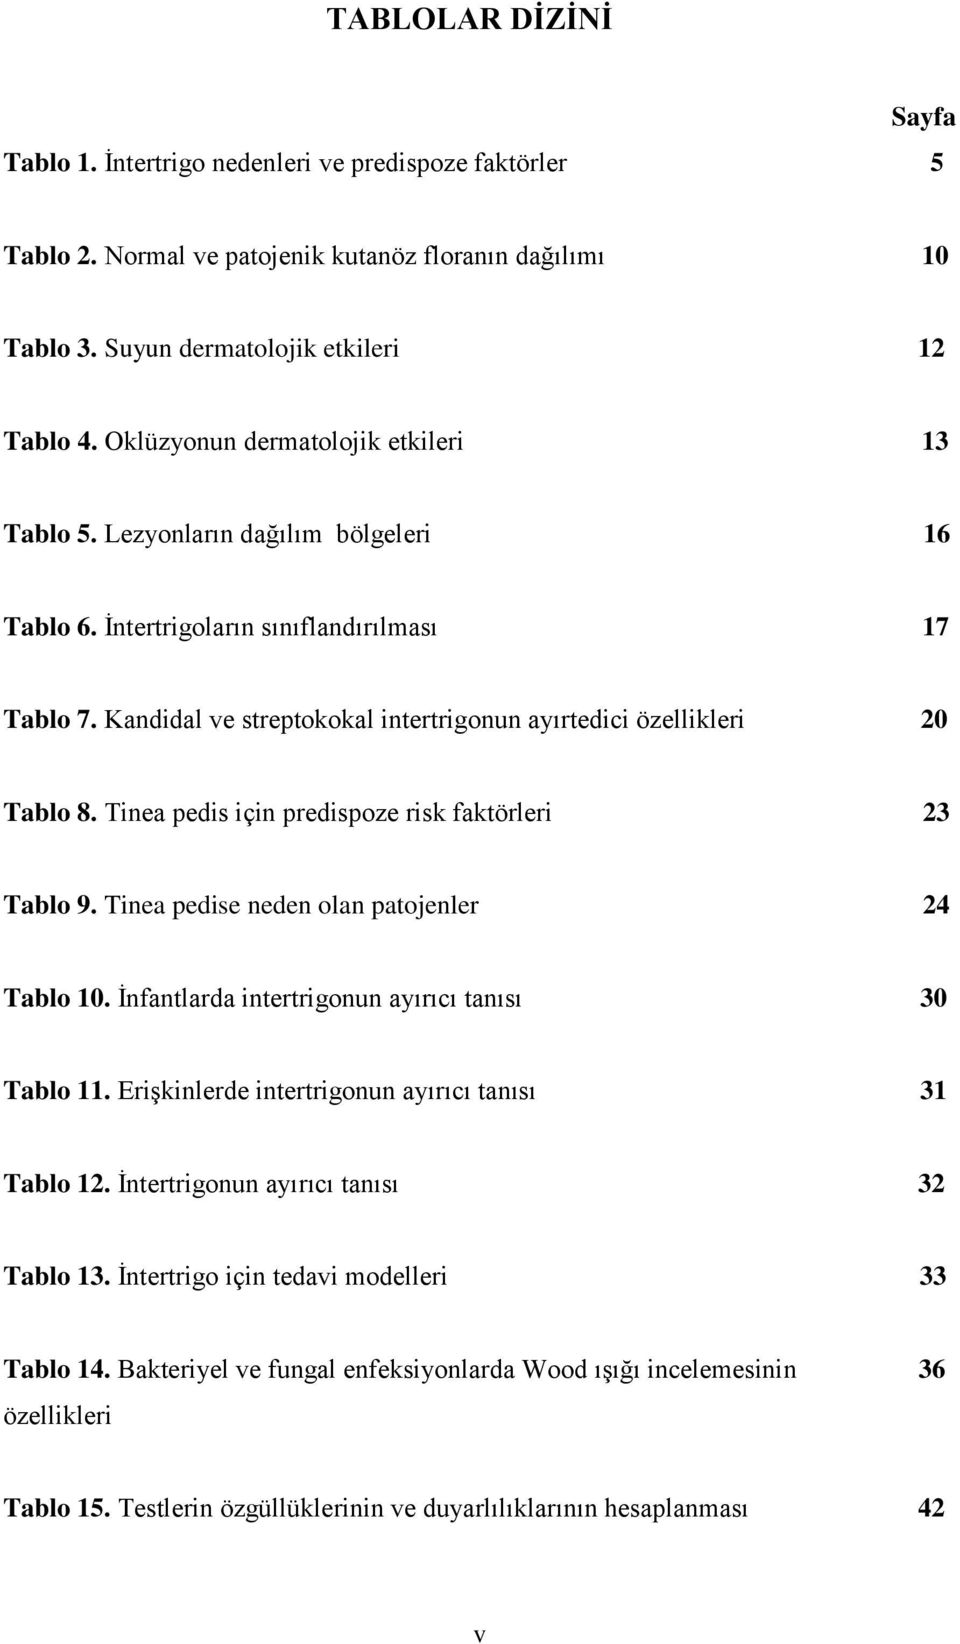 Kandidal ve streptokokal intertrigonun ayırtedici özellikleri 20 Tablo 8. Tinea pedis için predispoze risk faktörleri 23 Tablo 9. Tinea pedise neden olan patojenler 24 Tablo 10.